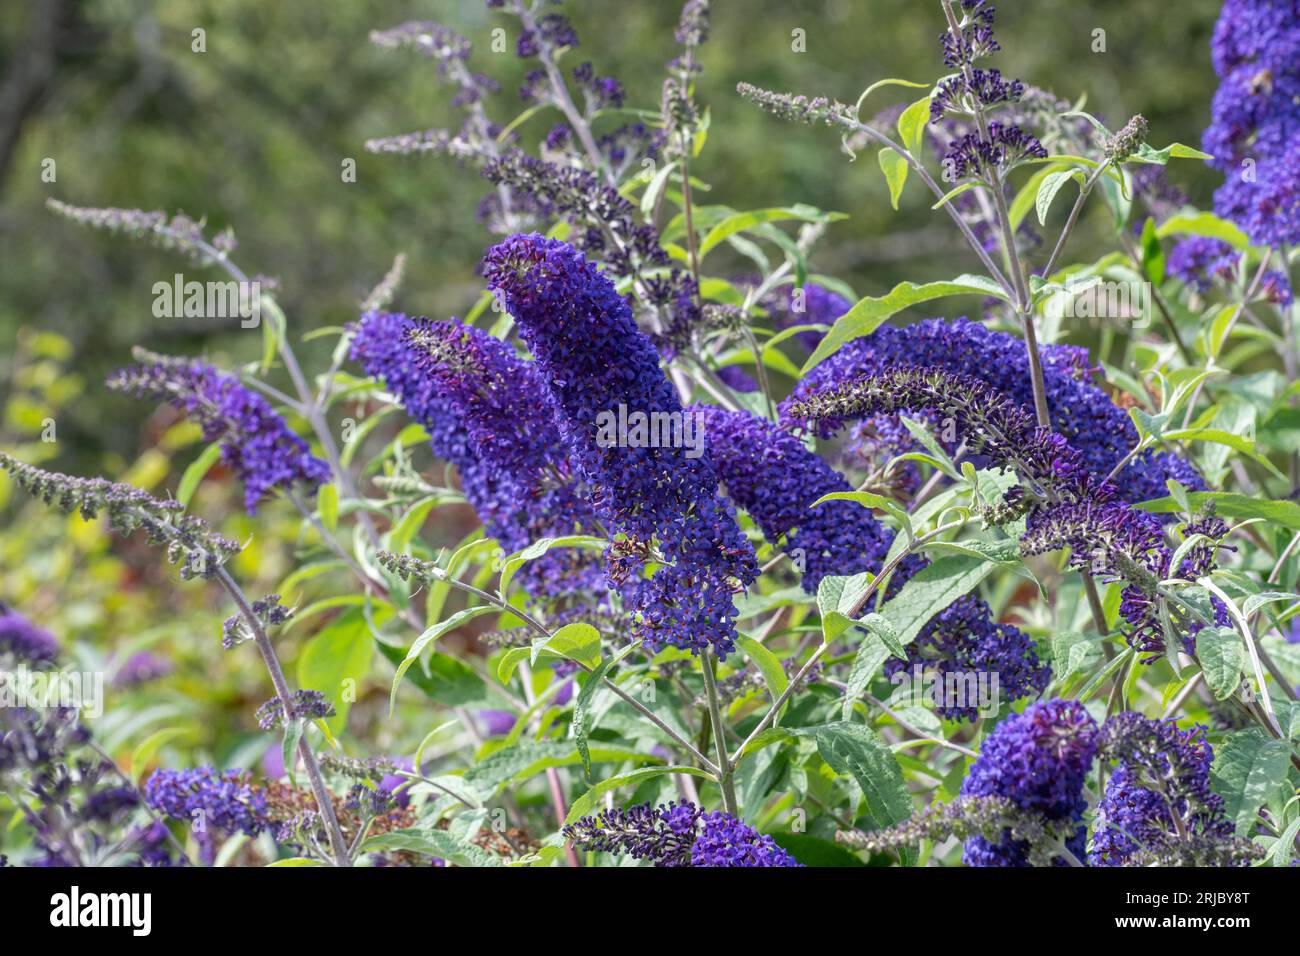 Buddleja davidii arbuste Blue Horizon (variété Buddleia), connu sous le nom de buisson à papillons, avec des fleurs bleues en été, Angleterre, Royaume-Uni Banque D'Images